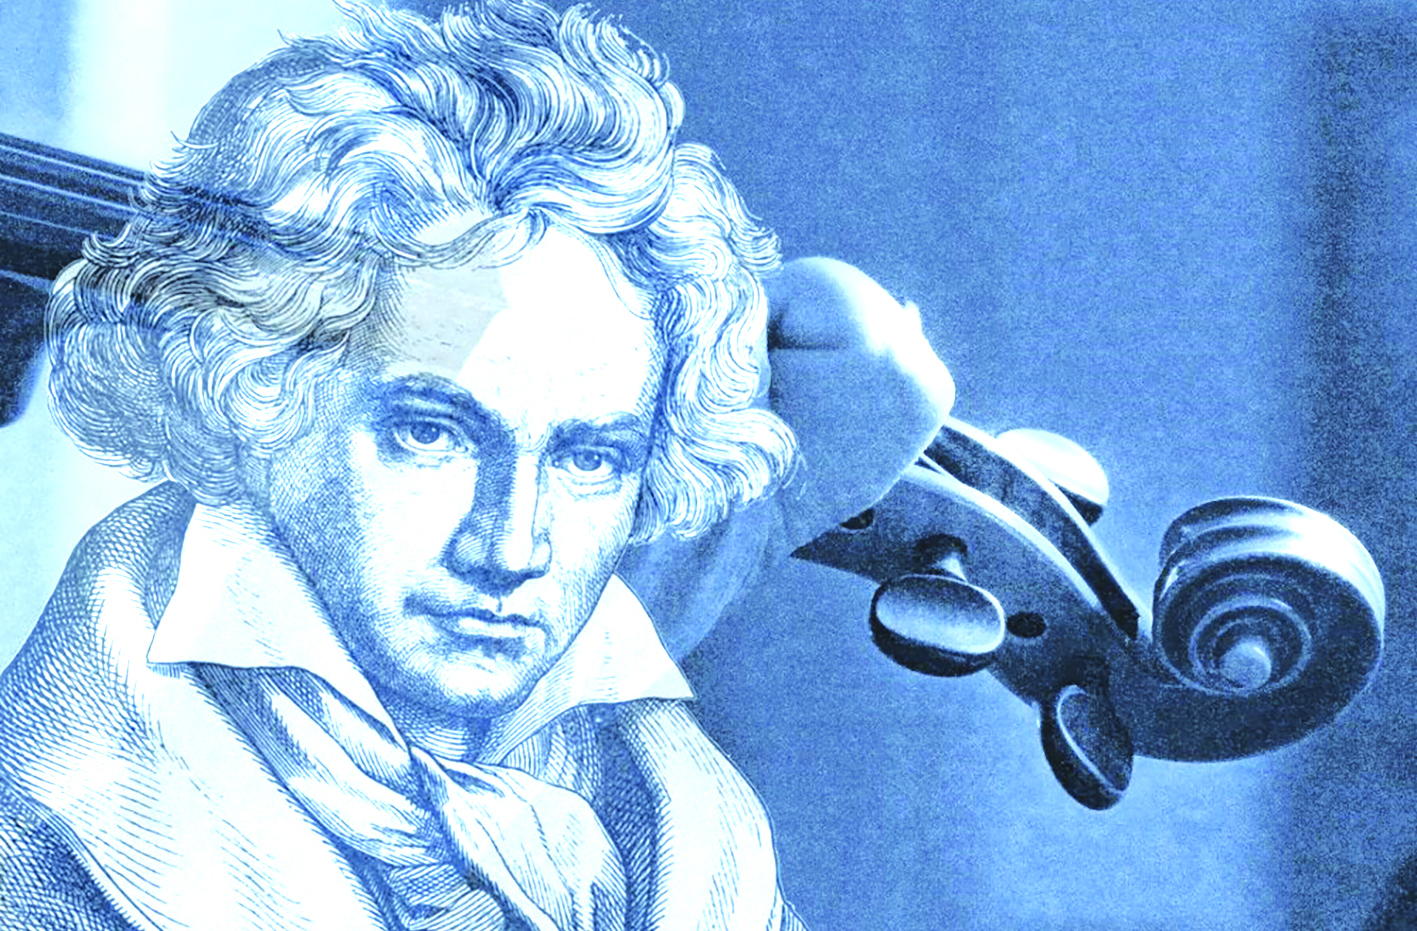 Hoàn thiện giao hưởng bỏ dở của Beethoven: AI thực sự là thiên tài?